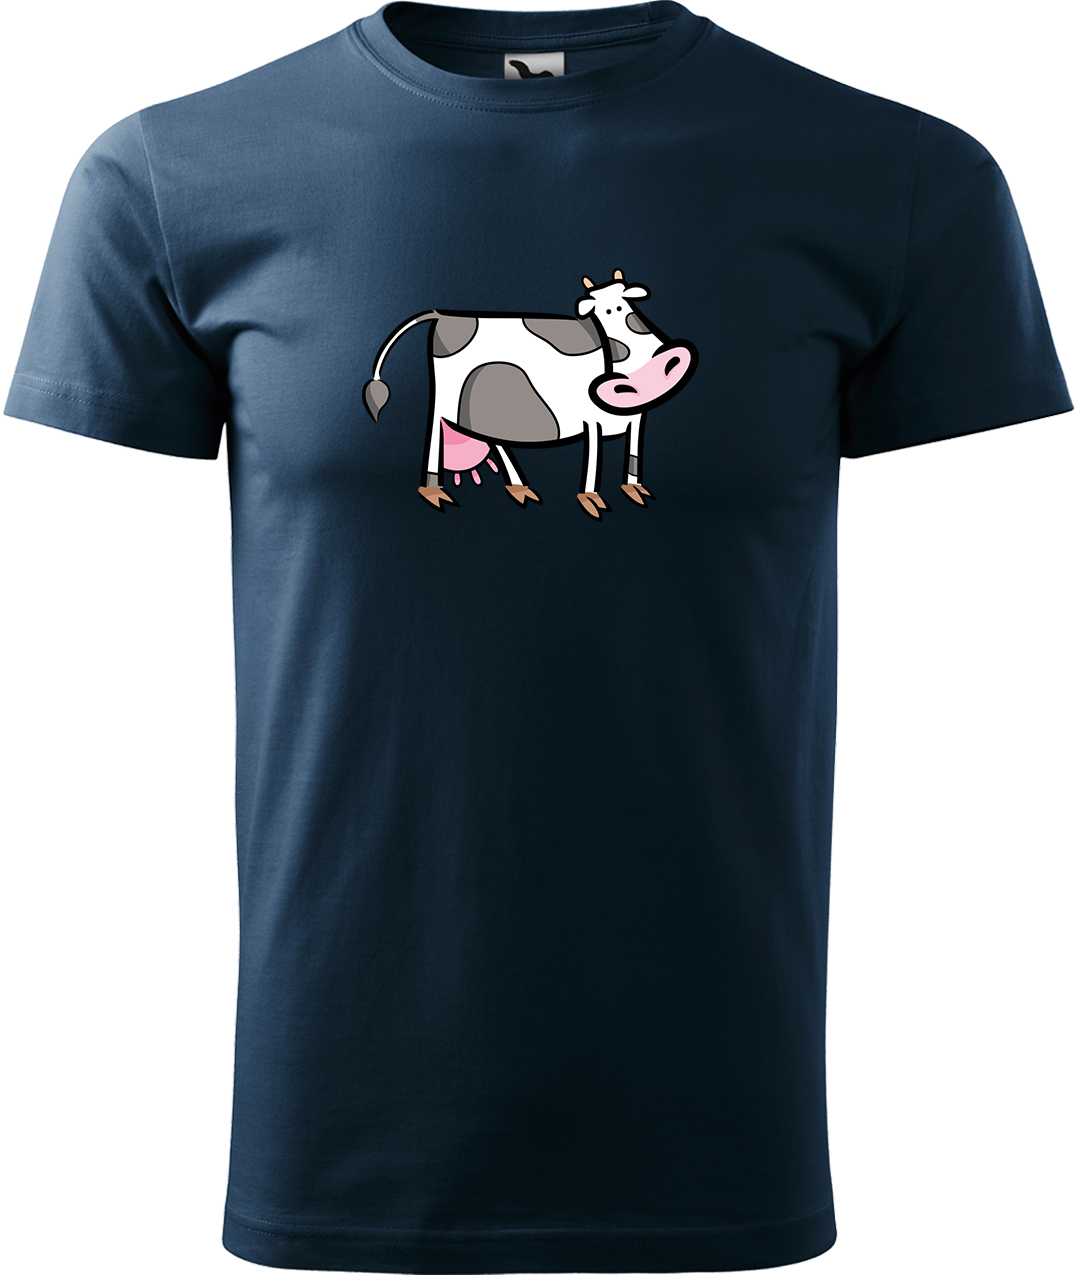 Pánské tričko s krávou - Kravička Velikost: XL, Barva: Námořní modrá (02), Střih: pánský